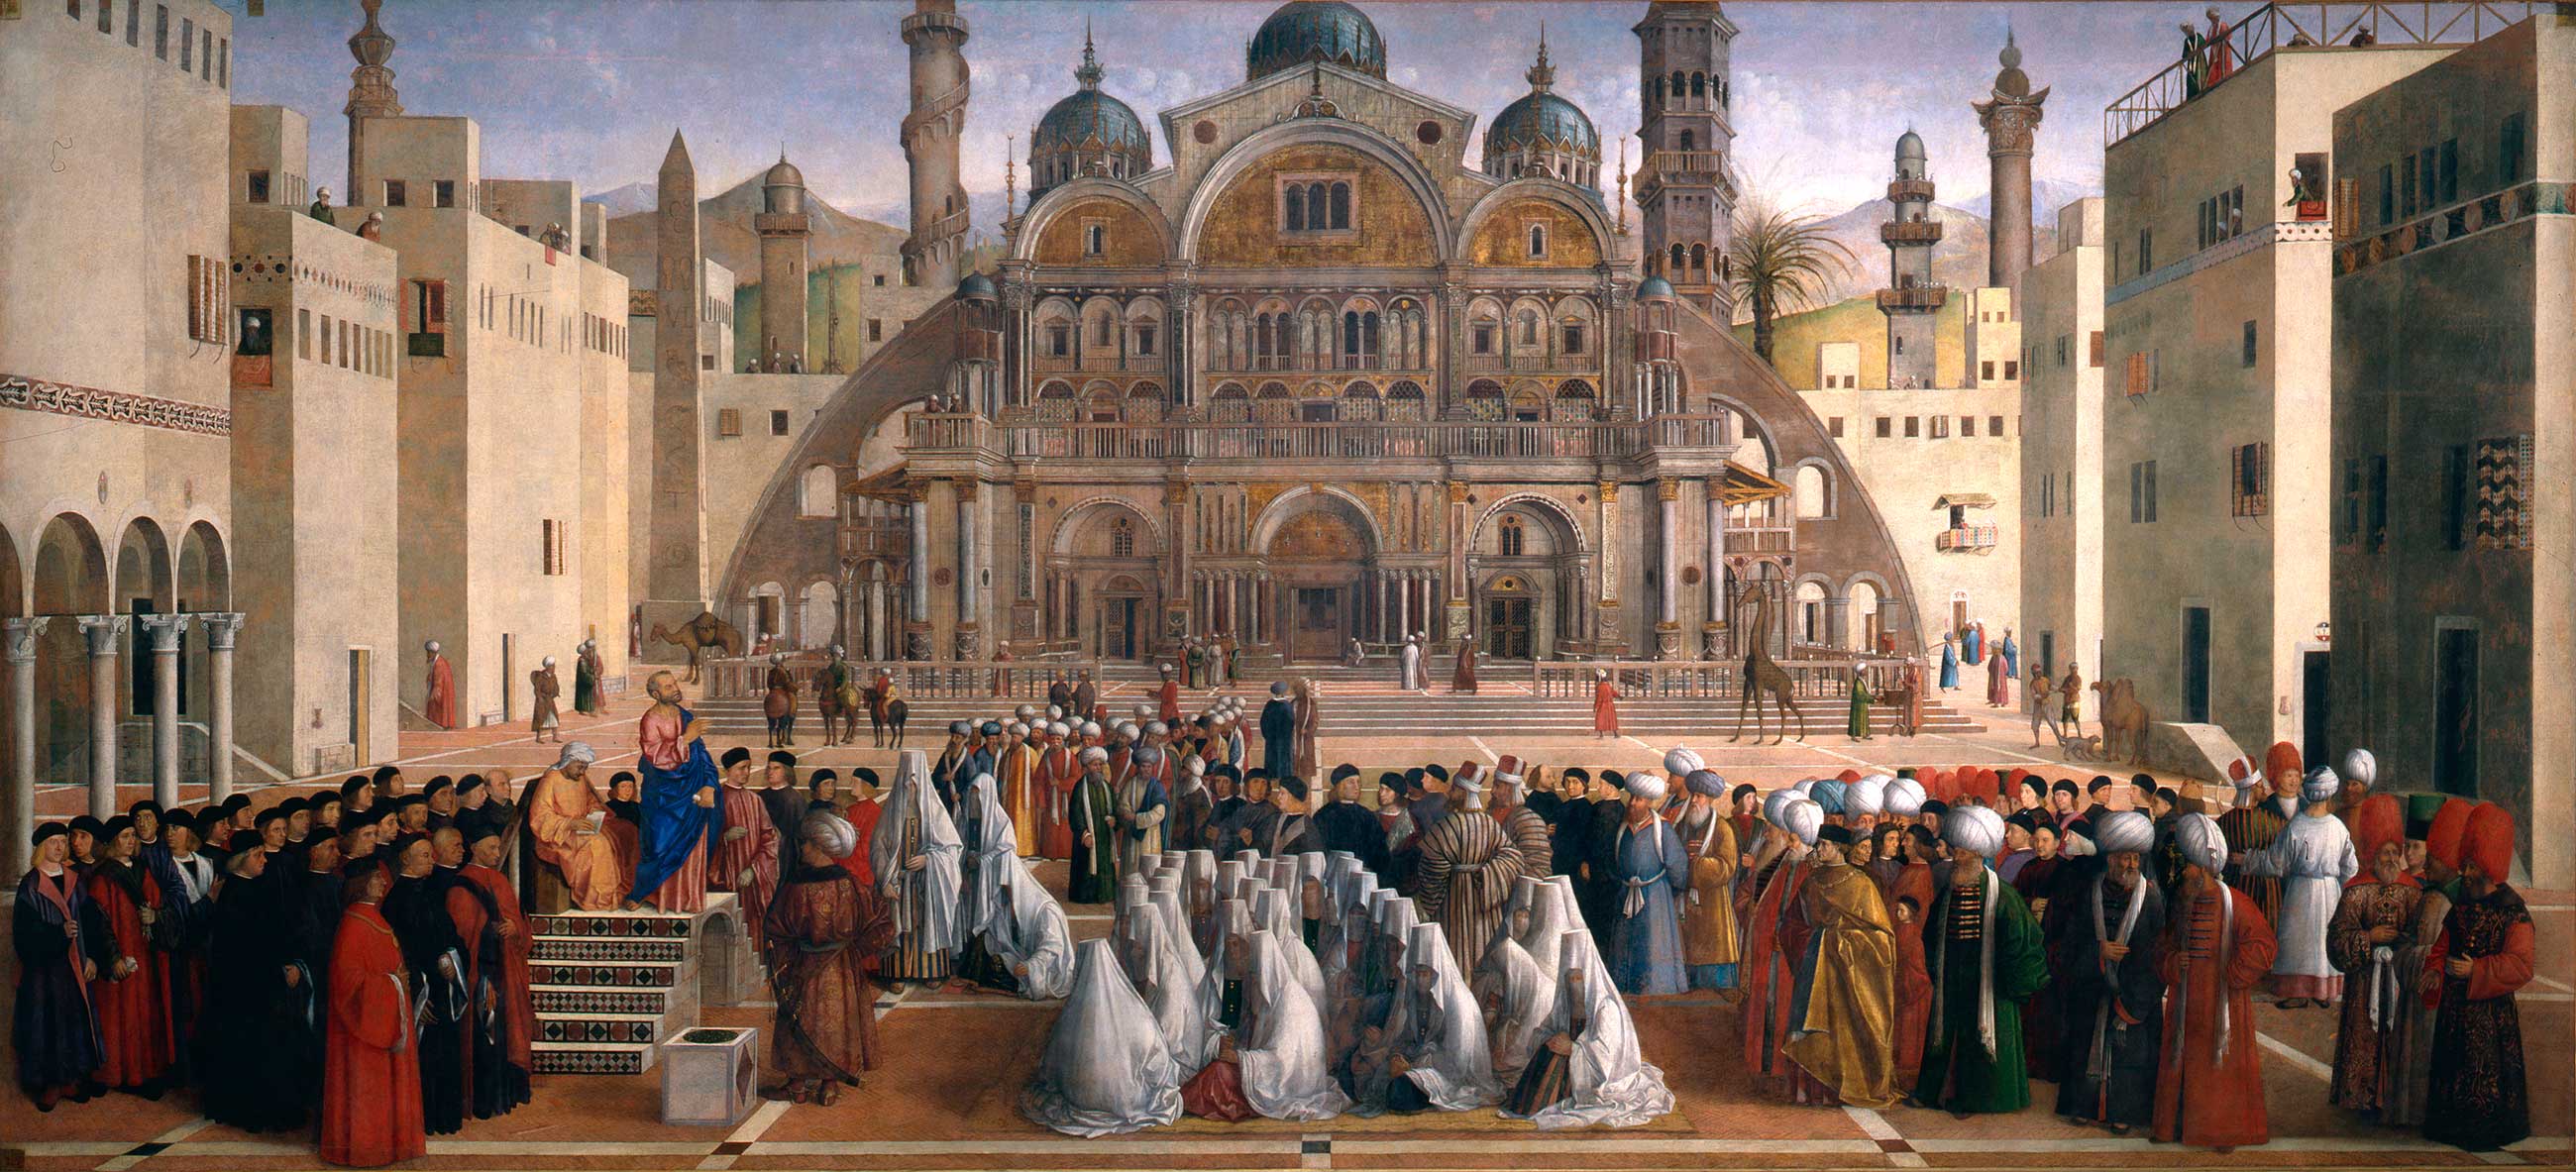 聖馬可在亞歷山卓宣教 by Gentile Bellini and Giovanni Bellini - 1504 - 1507 - 347 × 770 公分 